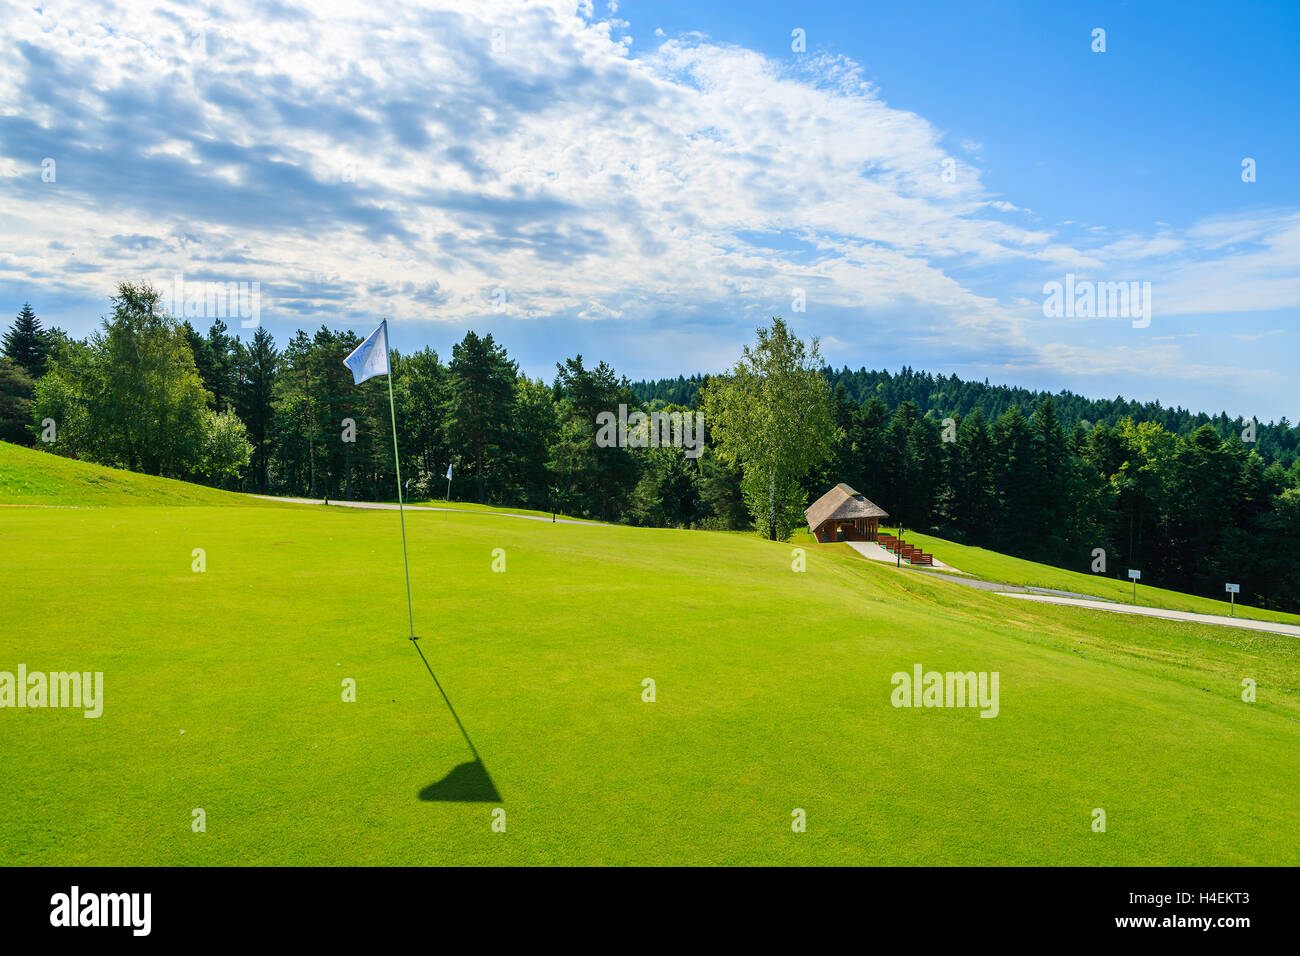 ARLAMOW GOLF COURSE, Polen - 3. August 2014: schöne Golf Spielplatz an sonnigen Sommertag in Arlamow Hotel. Das Luxushotel wurde Polens Regierung Besitz und befindet sich im Bieszczady-Gebirge. Stockfoto